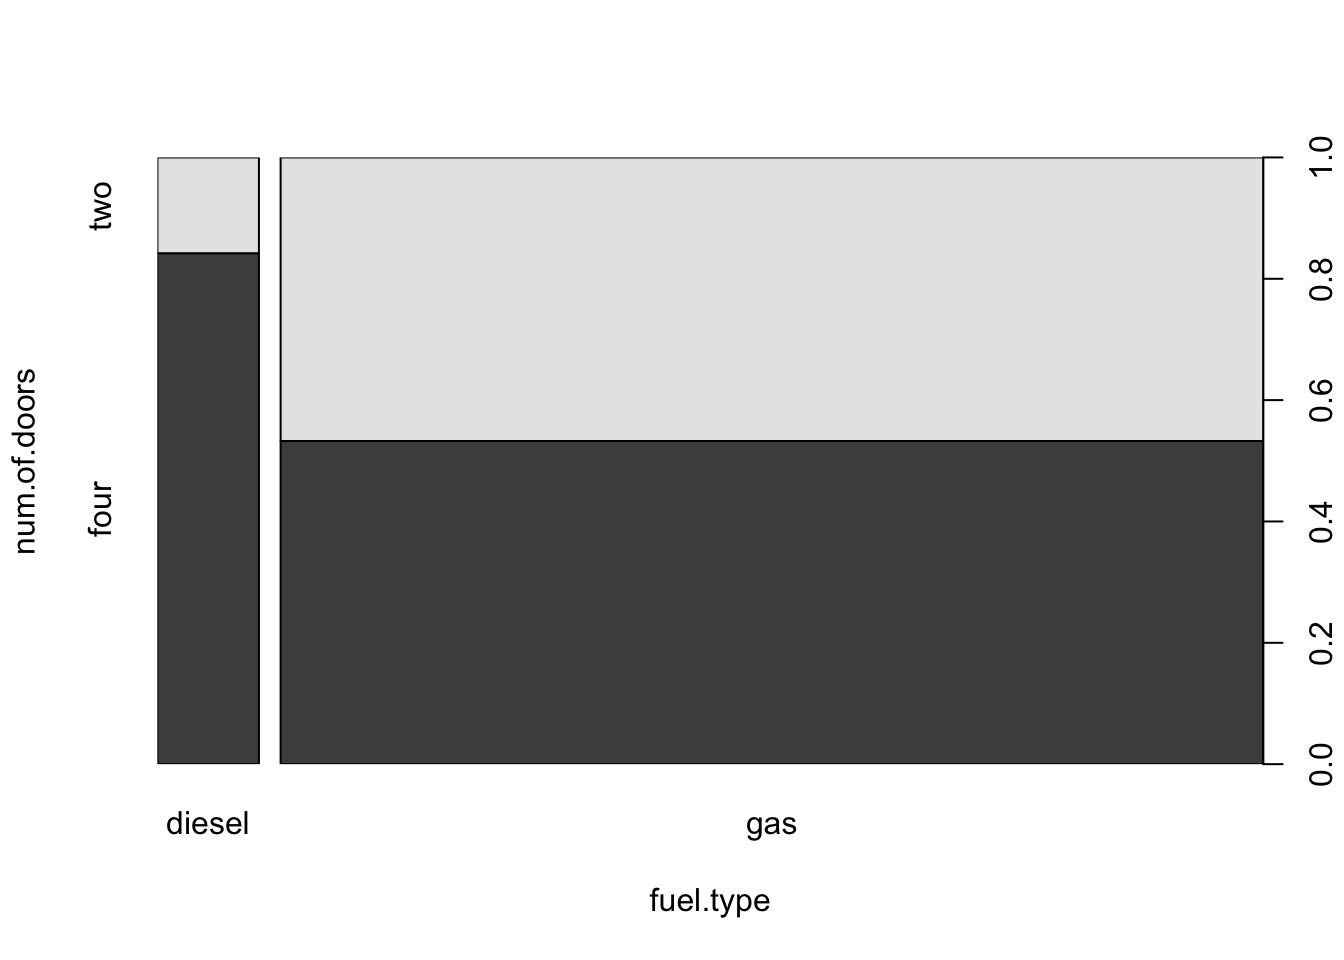 Number of Doors versus Fuel Type